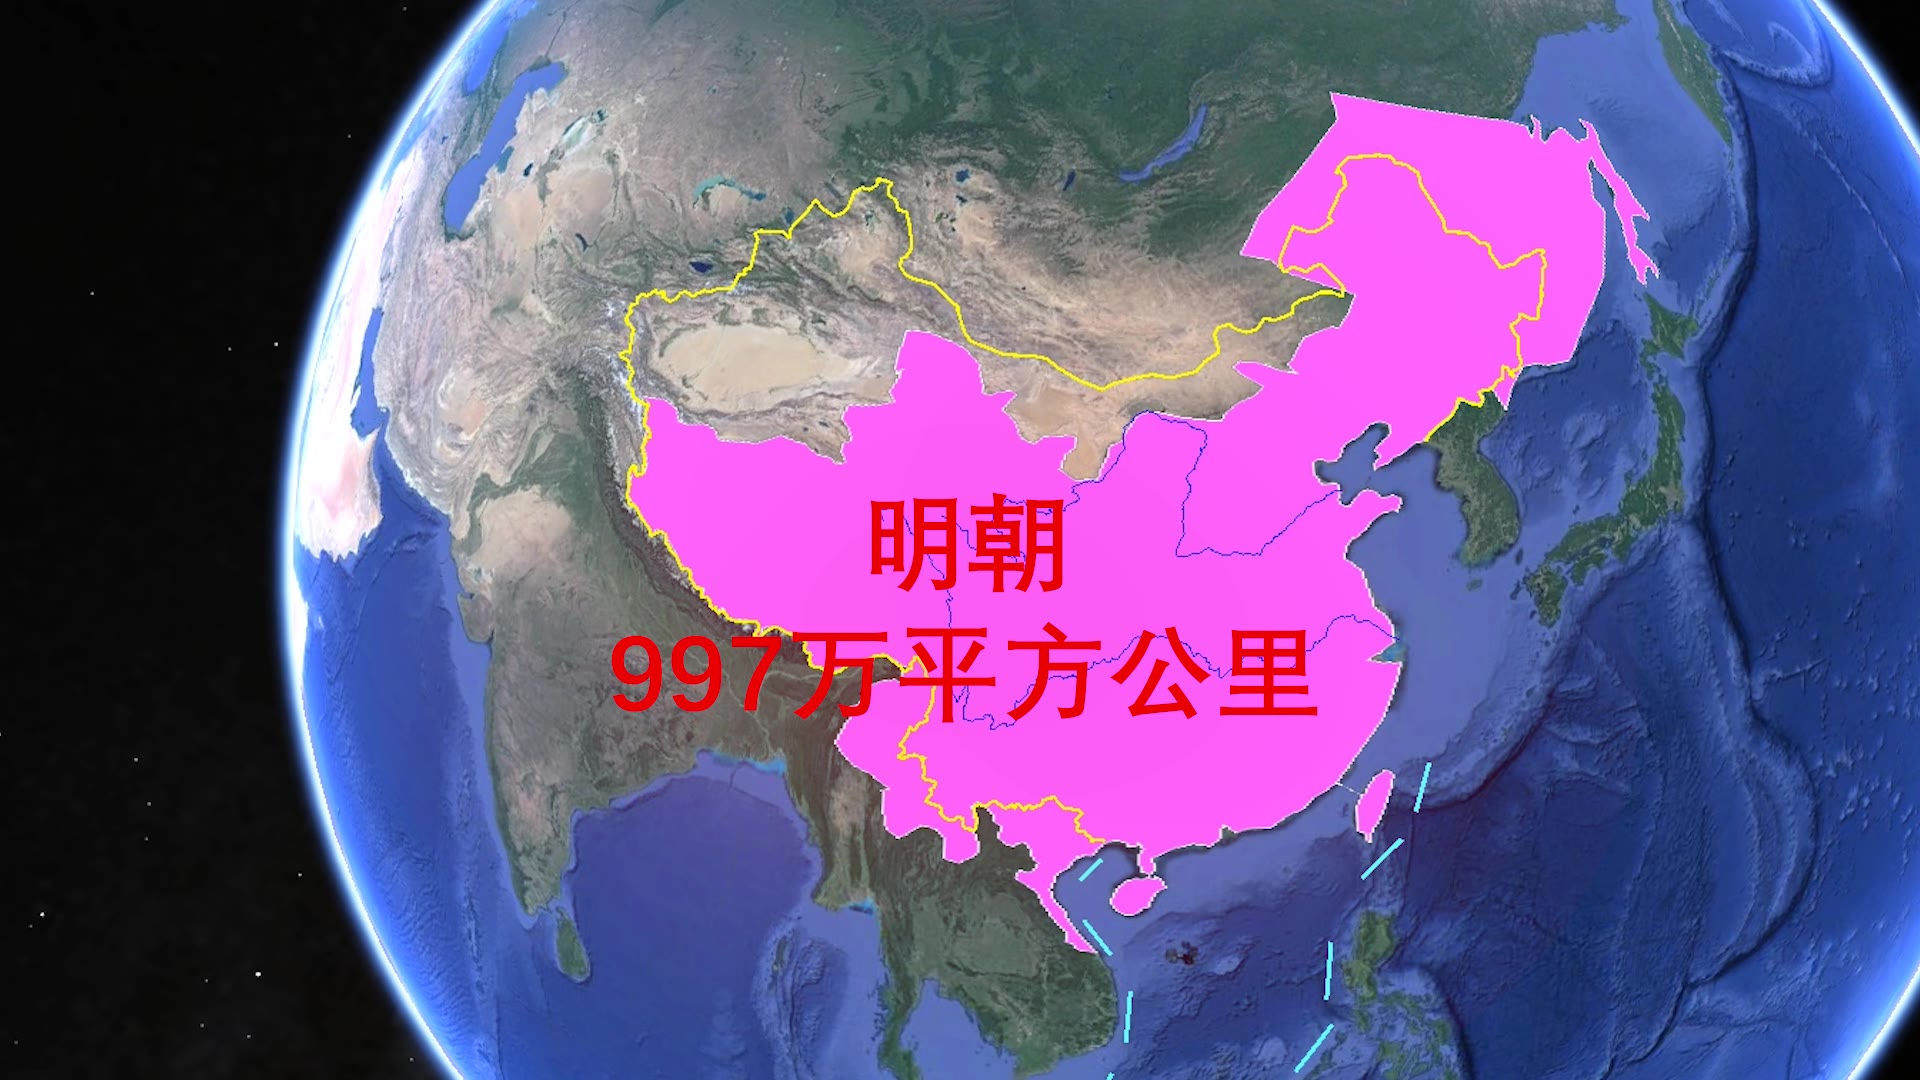 中国巅峰时期版图图片